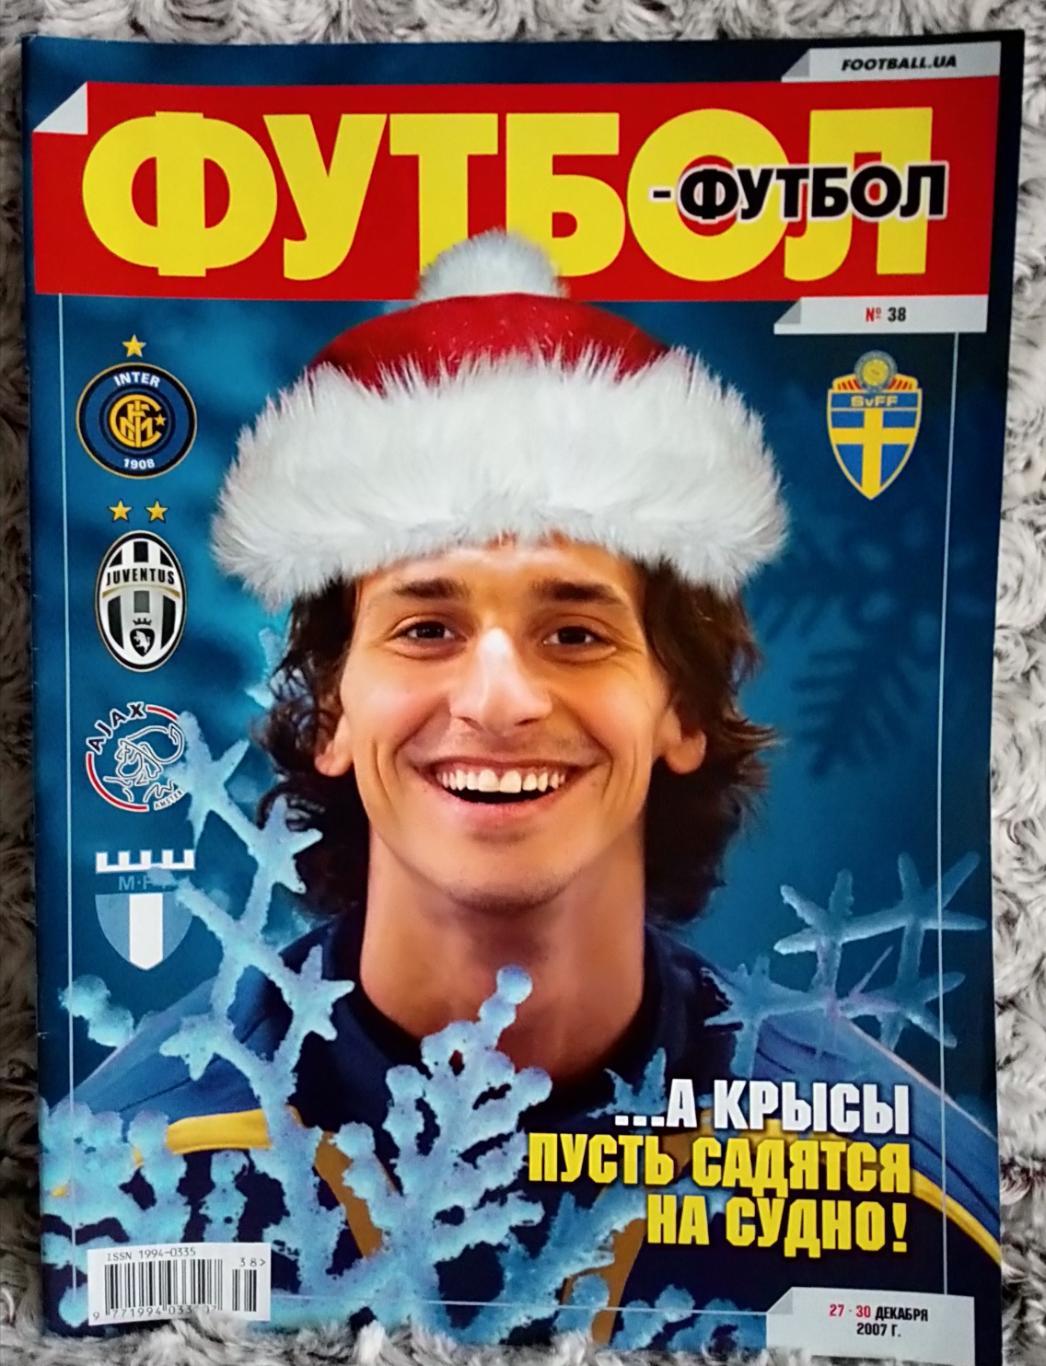 Журнал. Футбол. N 38/2007.Постер Ібрагимович.